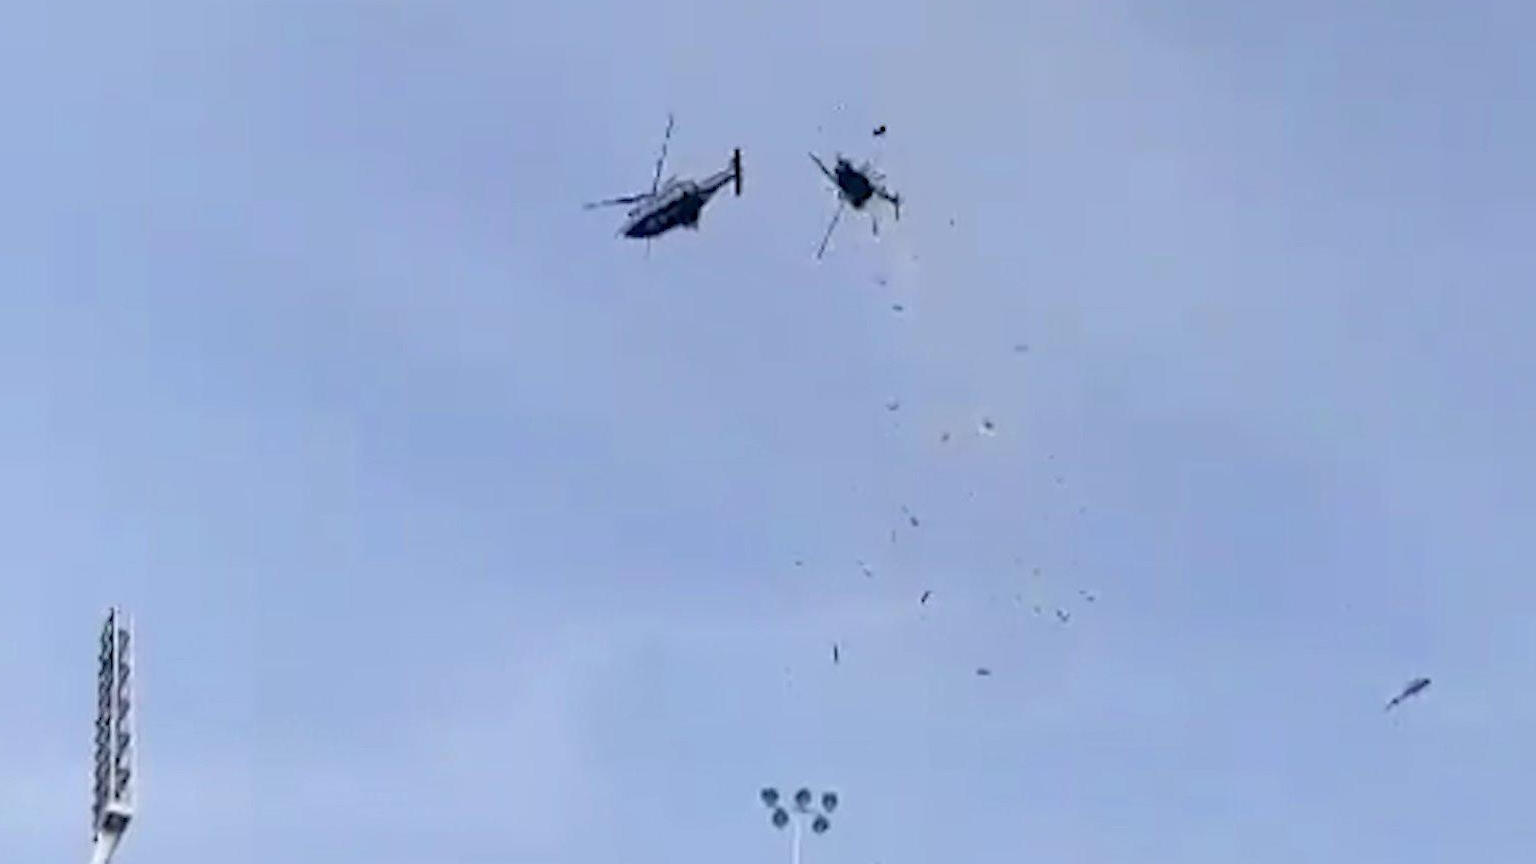 Zehn tote bei Abtsurz! Helikopter kollidieren bei Übung Diesen Crash hat niemand überlebt!